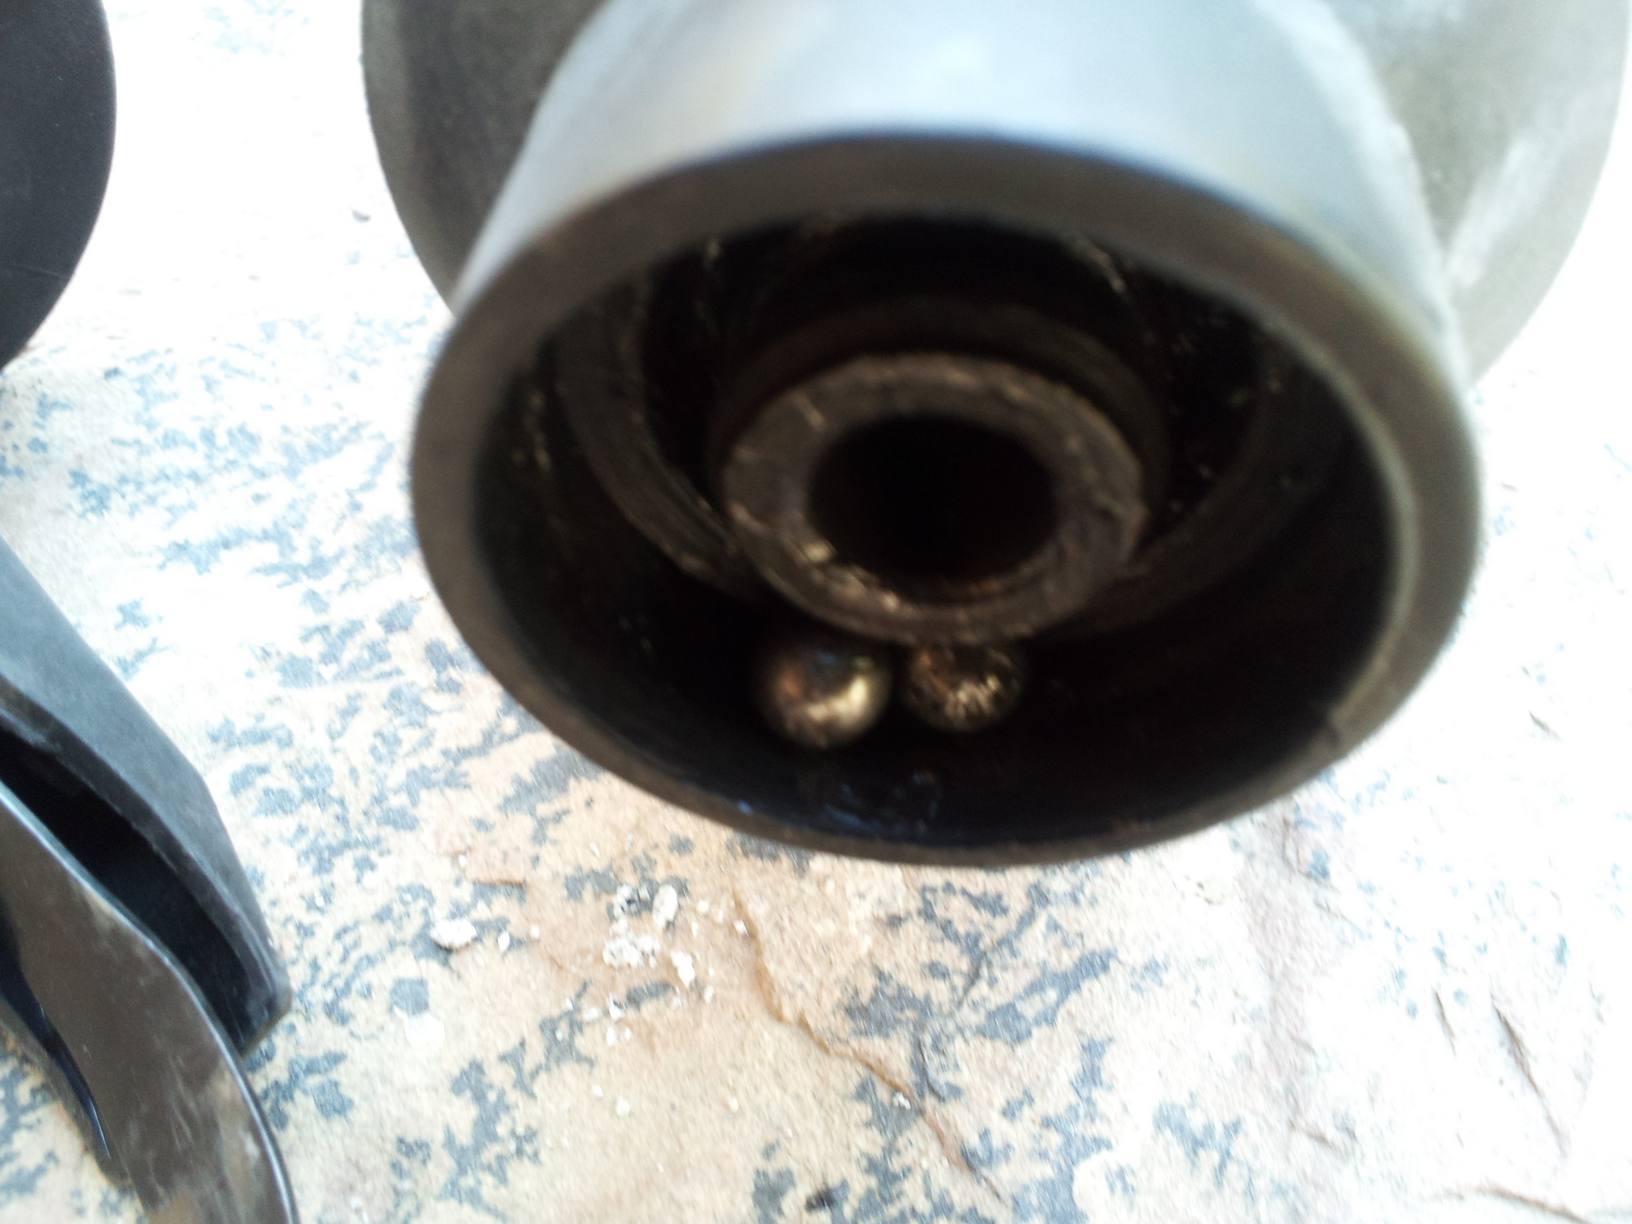 Broken clutch with ball bearings fallen out